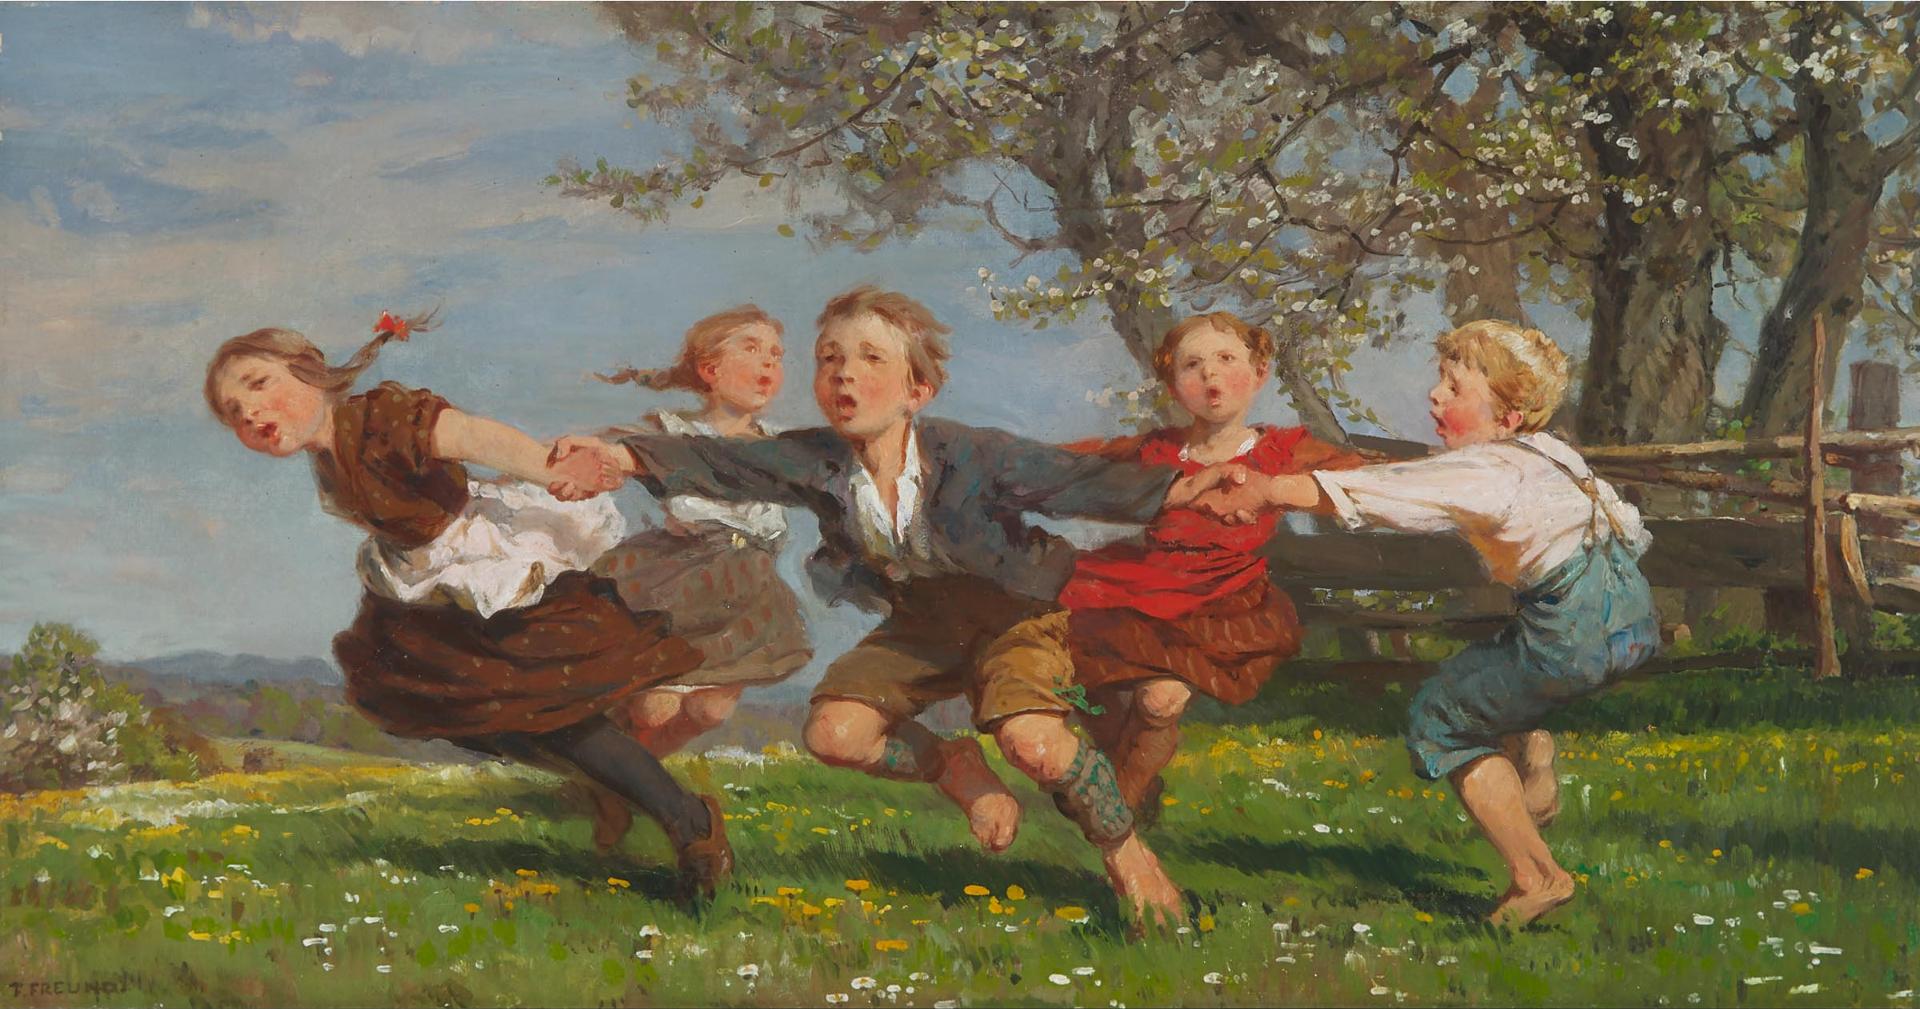 Fritz Freund (1859) - Reigen (Round Dance), Ca. 1914